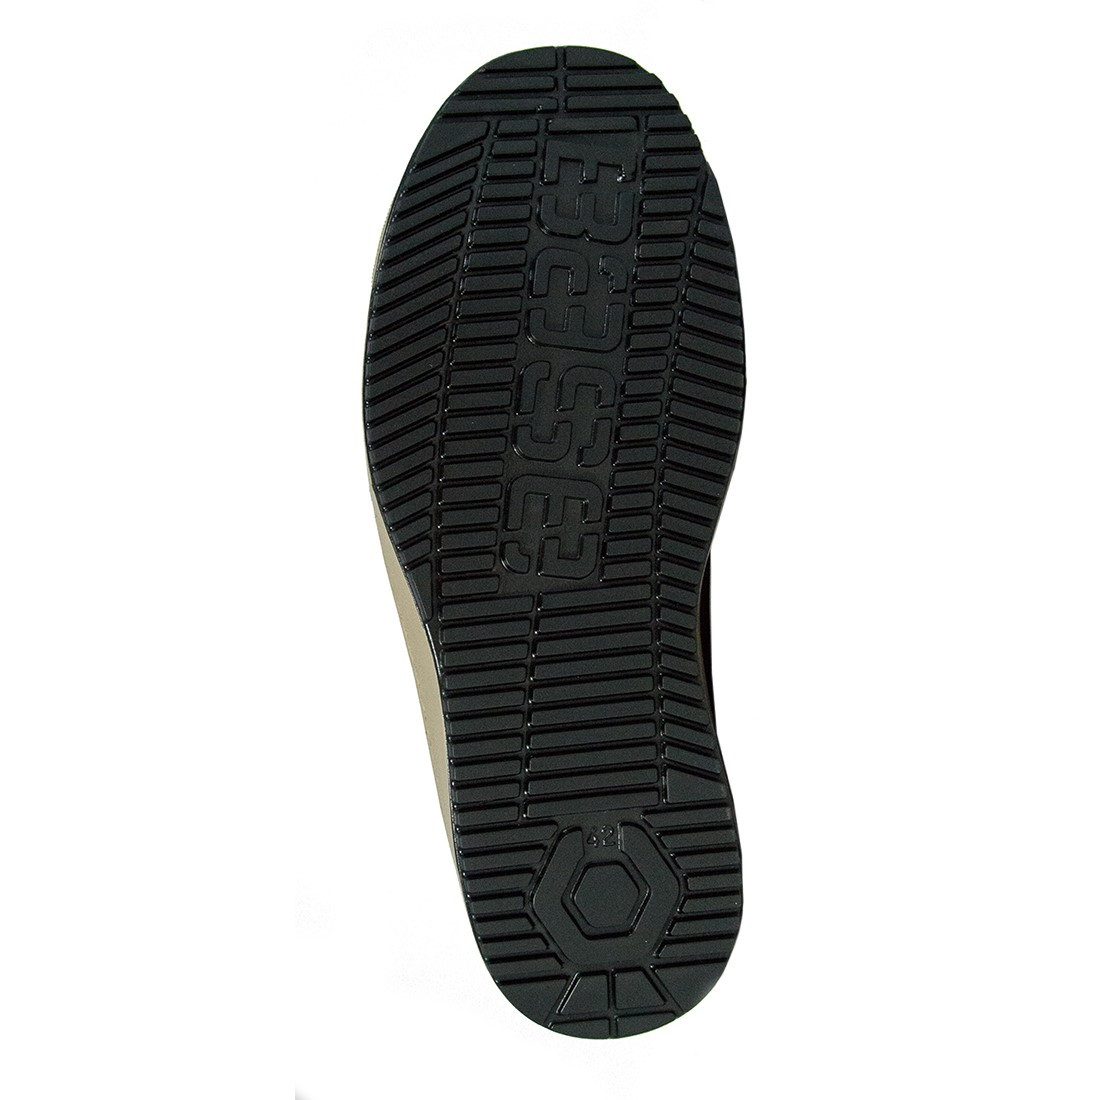 Oak Boot S3 SRC - Les chaussures de protection